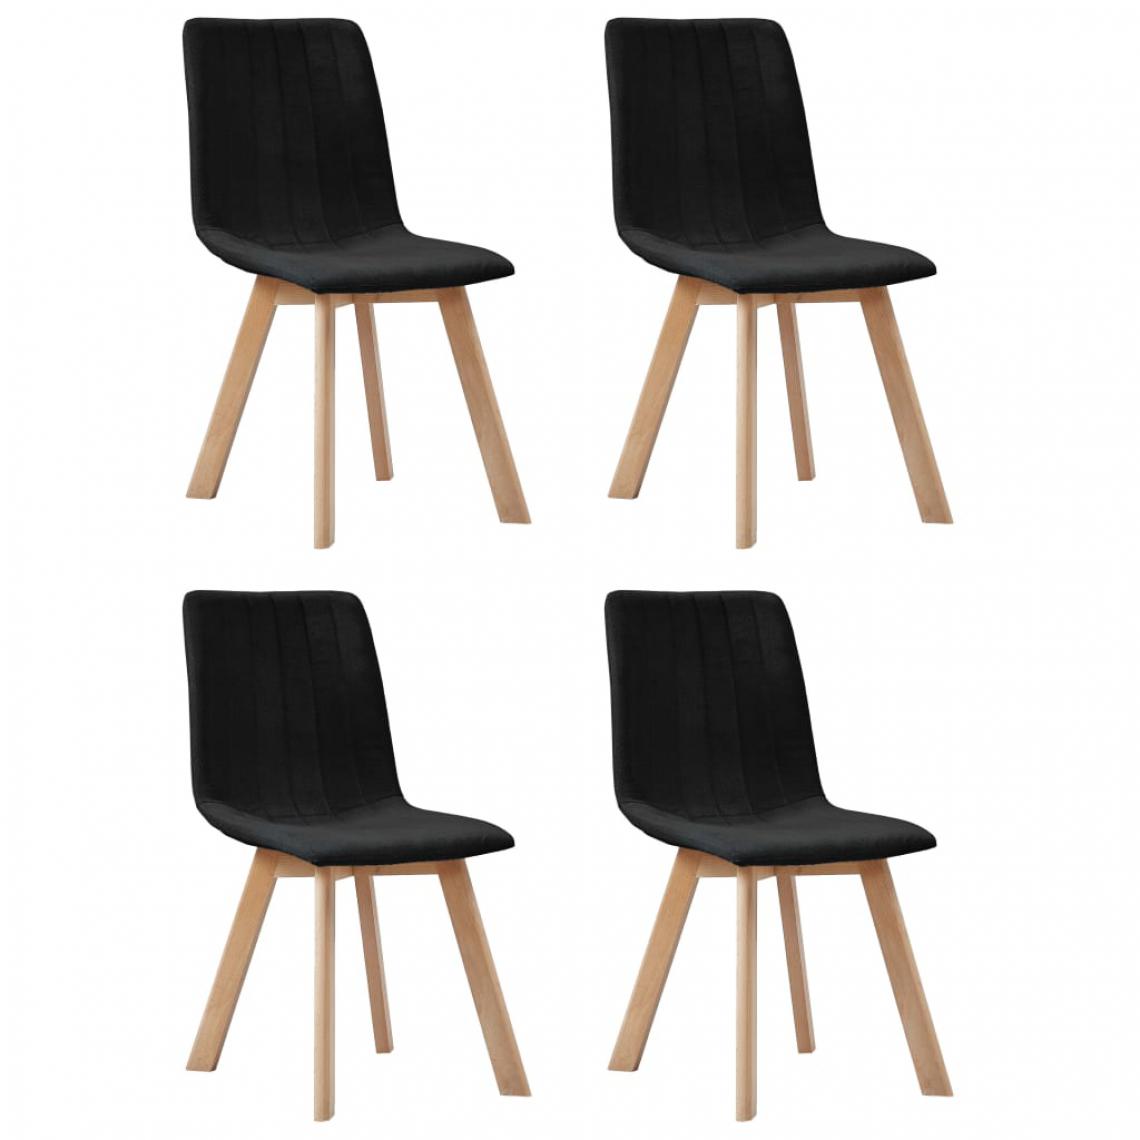 Icaverne - Chic Fauteuils et chaises gamme Sri Jayawardenapura Chaises de salle à manger 4 pcs Noir Tissu - Chaises